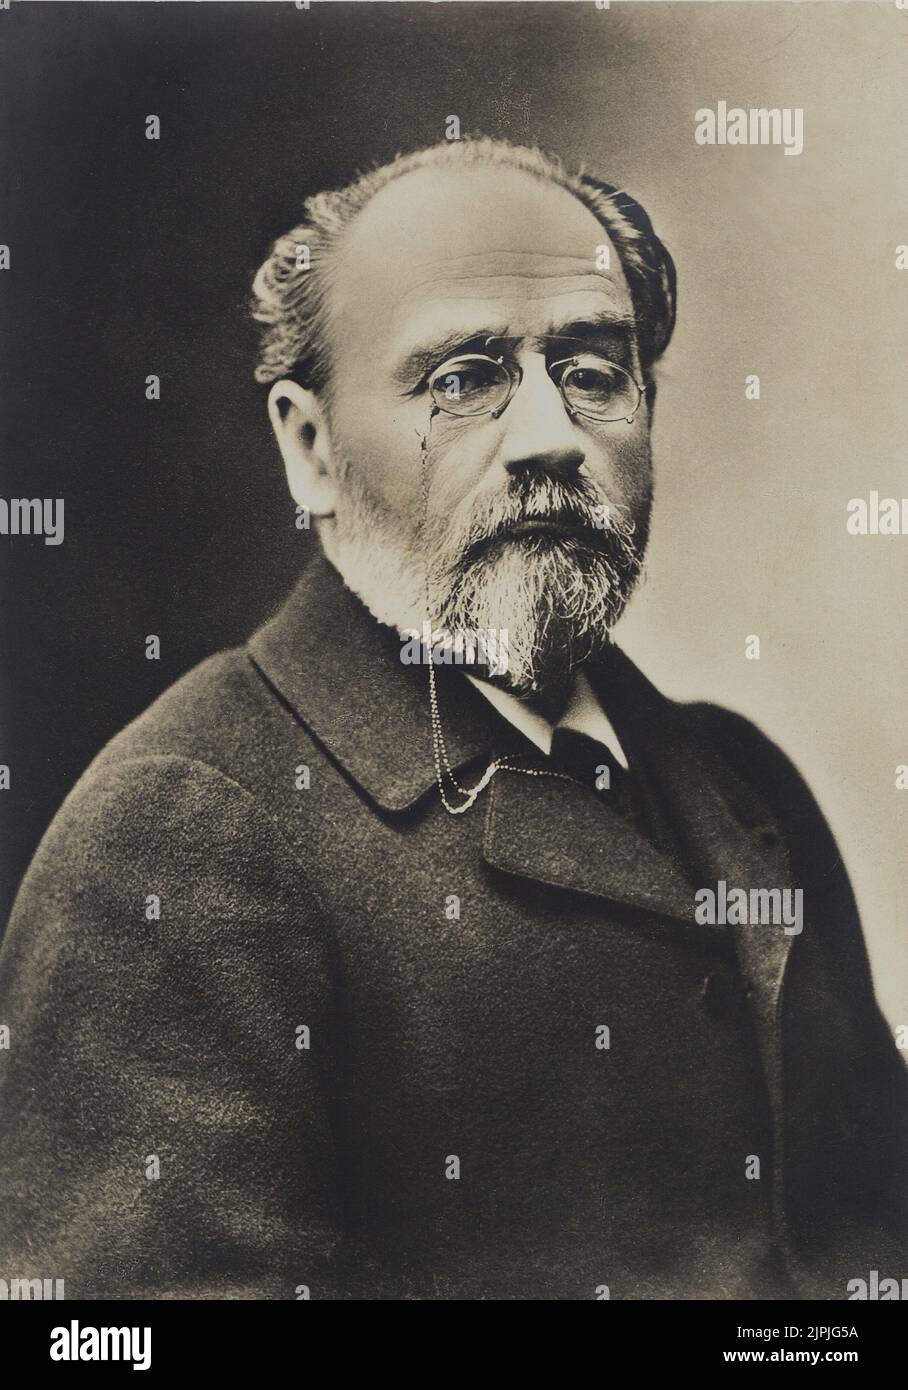 El célebre escritor francés Emile ZOLA ( 1840 - 1902 ) - NATURALISMO - NATURALISMO - SCRITTORE - LETTERATURA - LITERATURA - OCCHIALI - pincenez - pince-nez - gafas - barba e baffi - barba ---- Archivio GBB Foto de stock